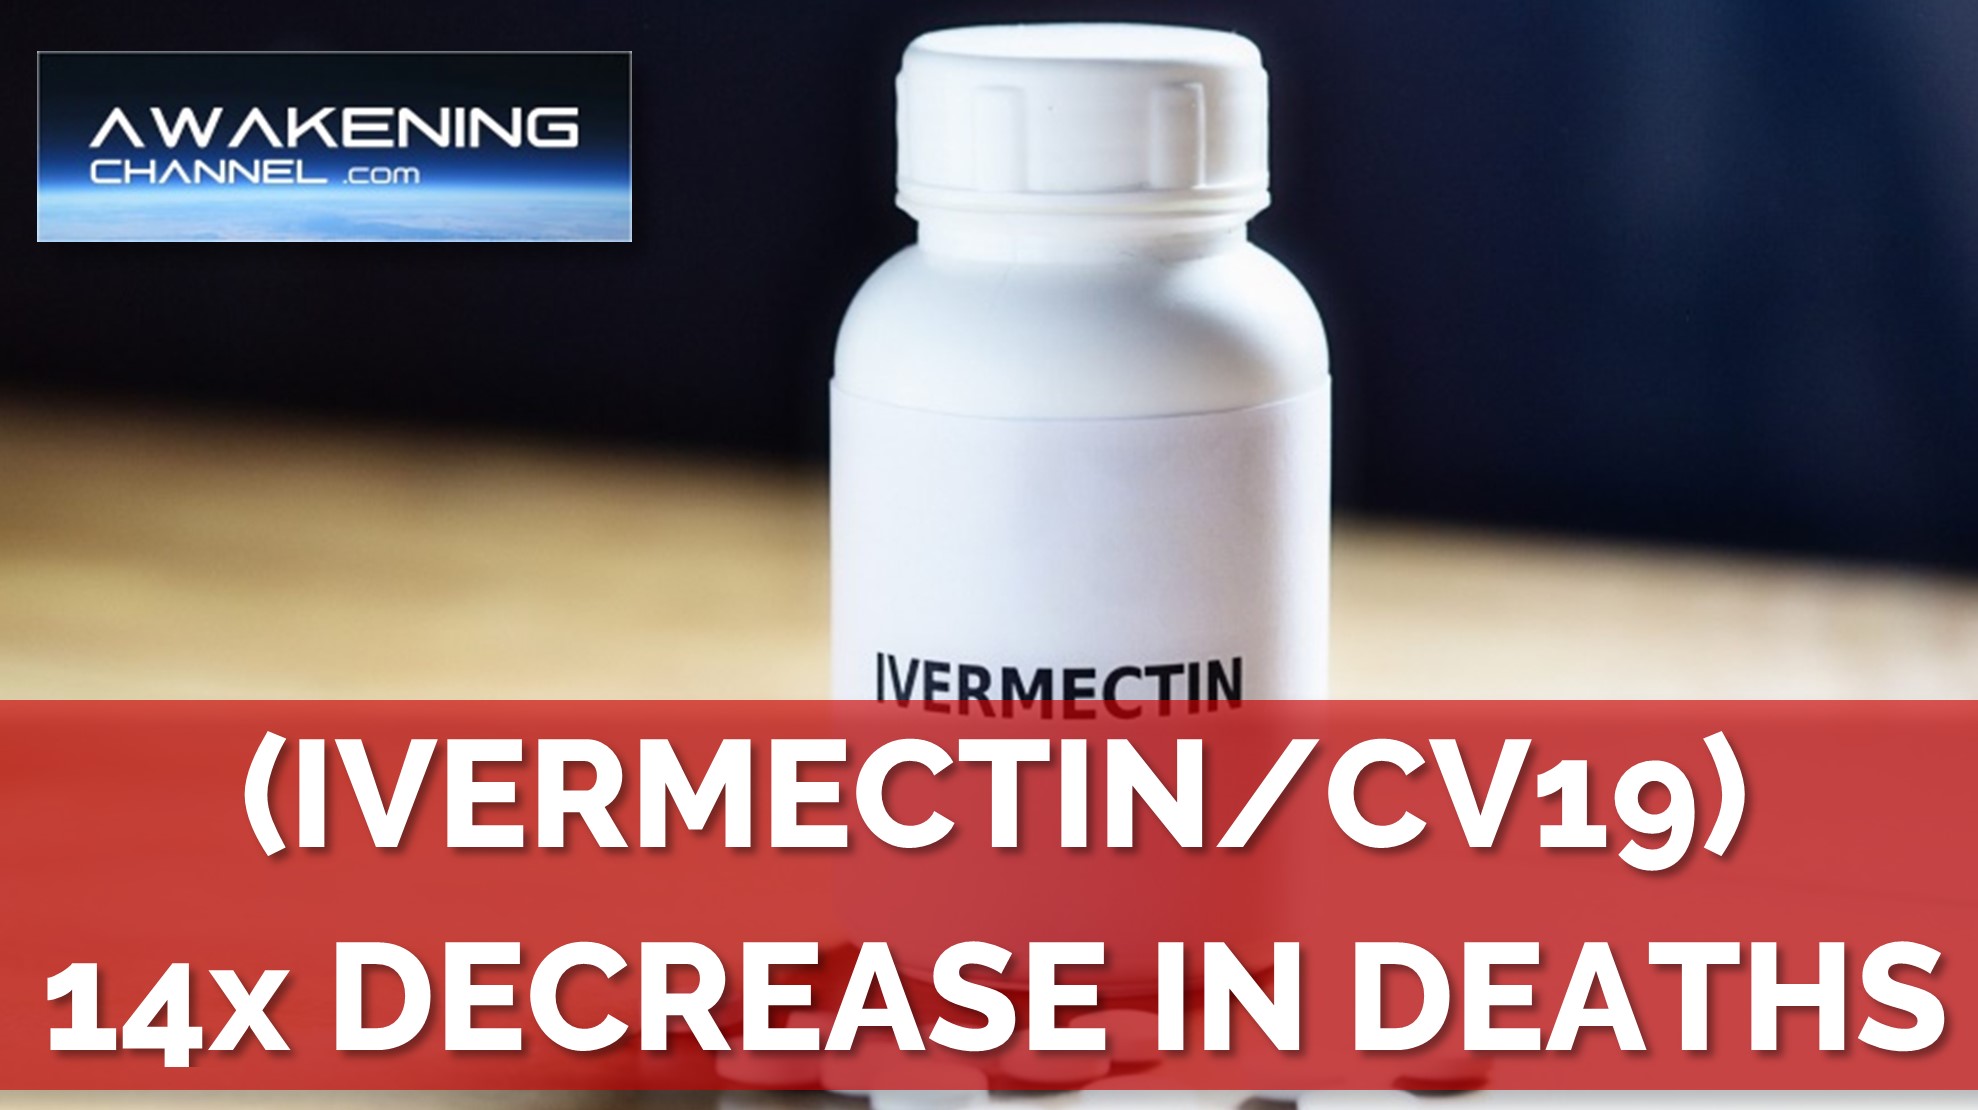 (Ivermectin/CV19) 14 Fold Decrease In Deaths